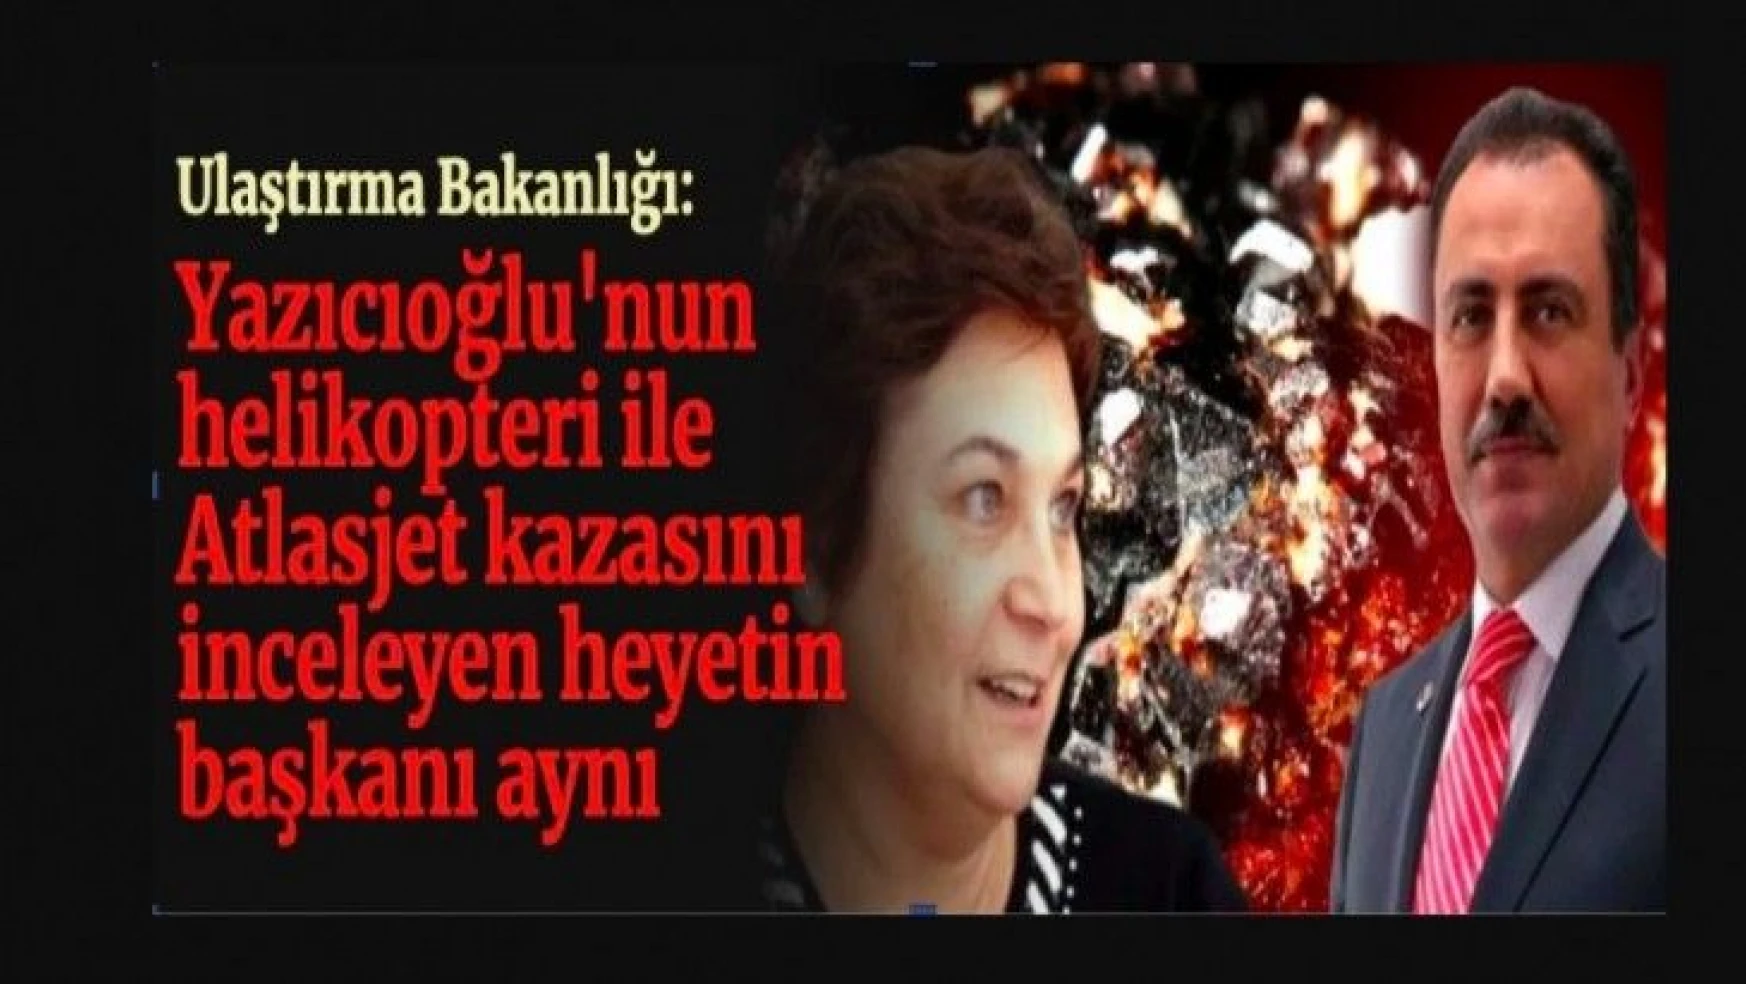 'Yazıcıoğlu'nun helikopteri ile Atlasjet enkazını inceleyen uzman aynı'